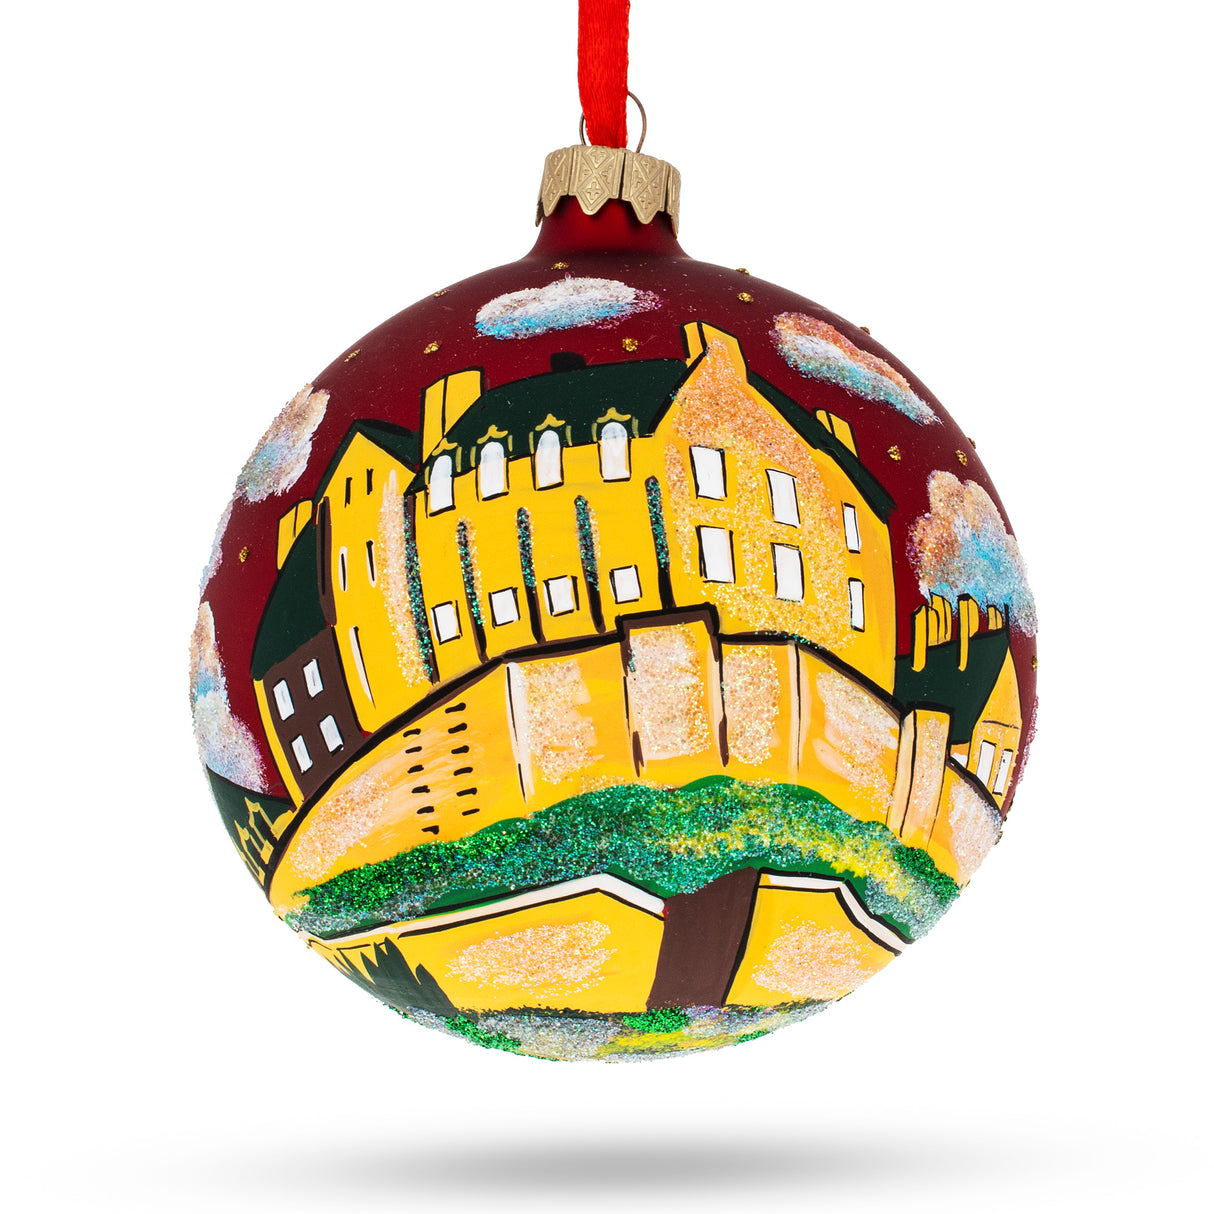 Glass Edinburgh Castle, Scotland Glass Ball Christmas Ornament 4 Inches in Multi color Round